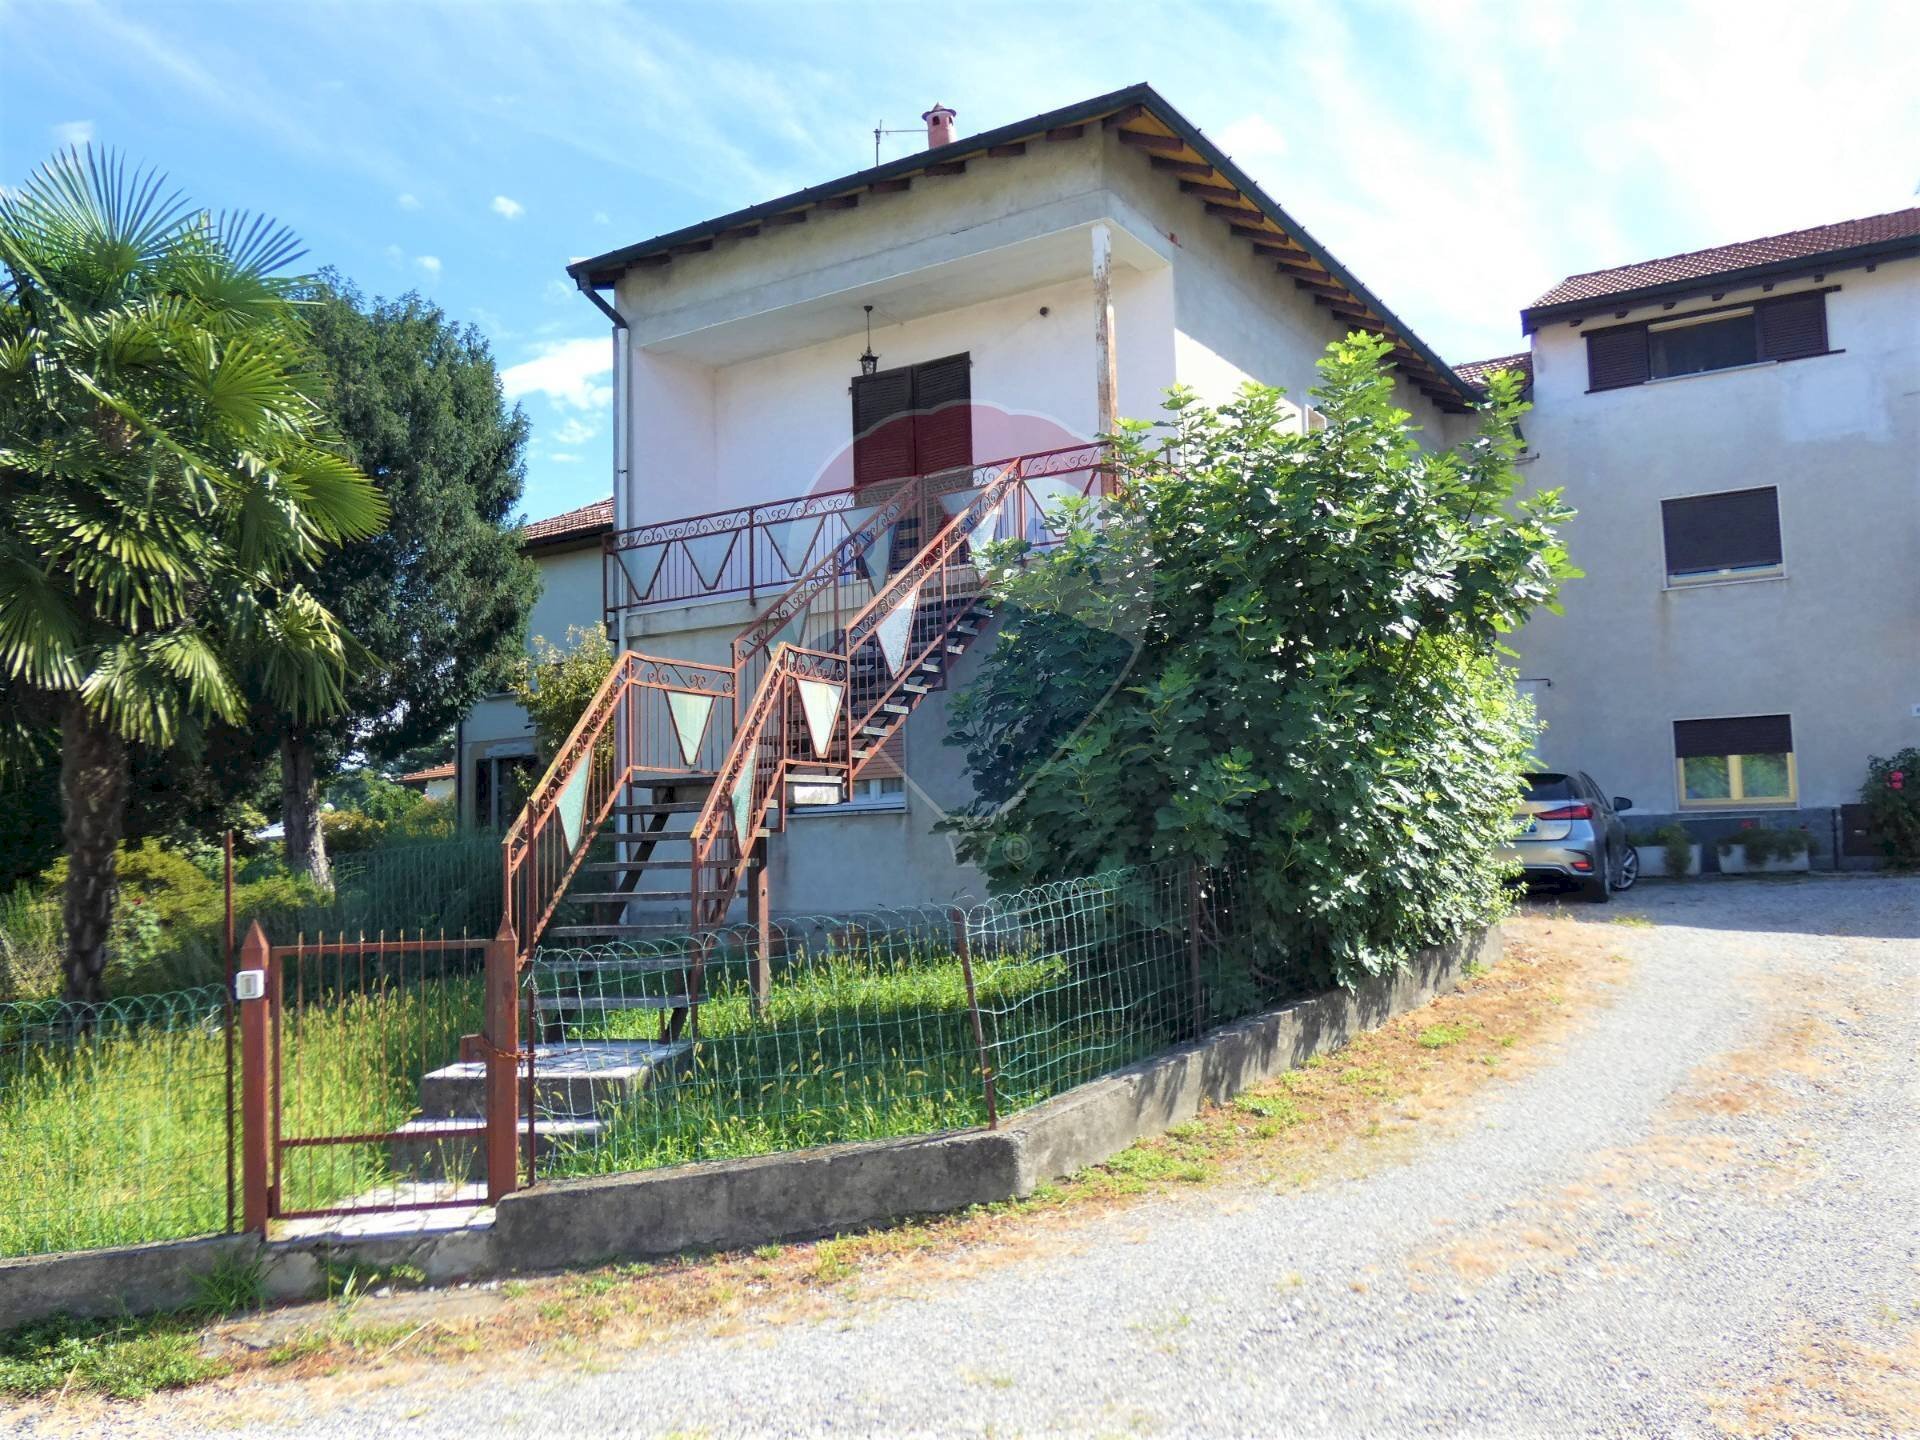 Vendita Casa semi indipendente Cavour, 20
Brebbia, Brebbia